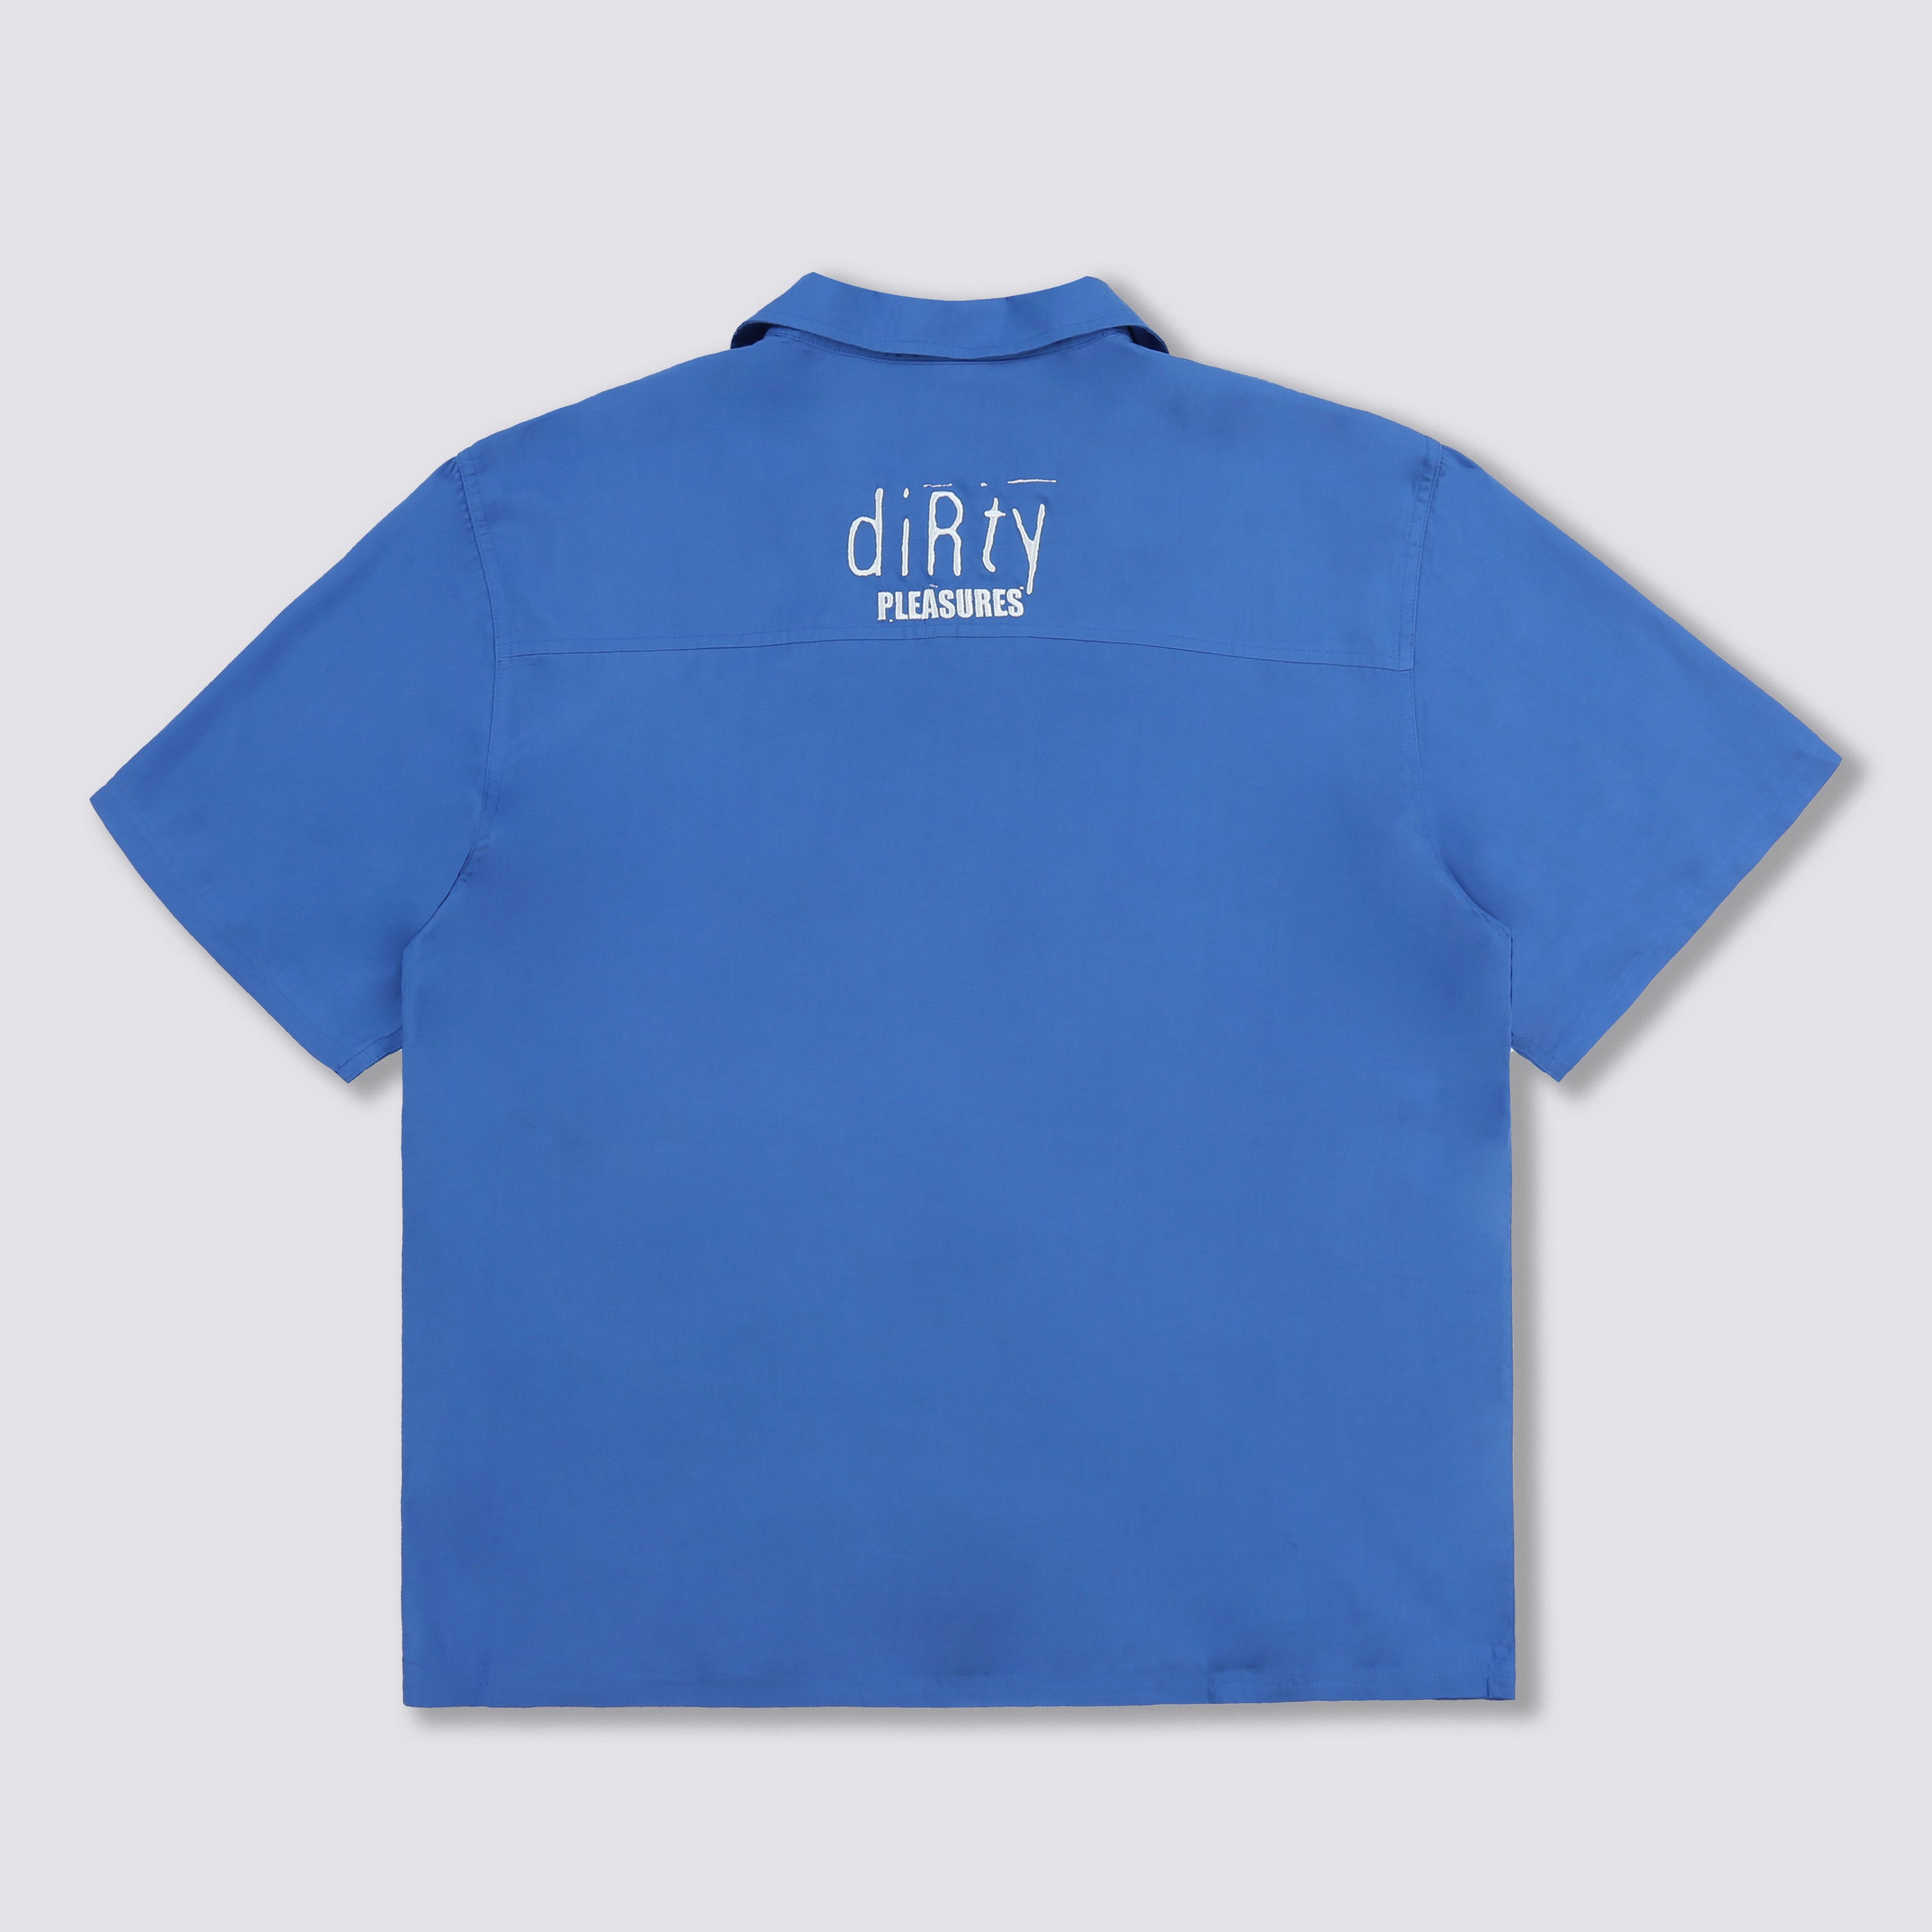 Alien Camp Collar Shirt - Blue